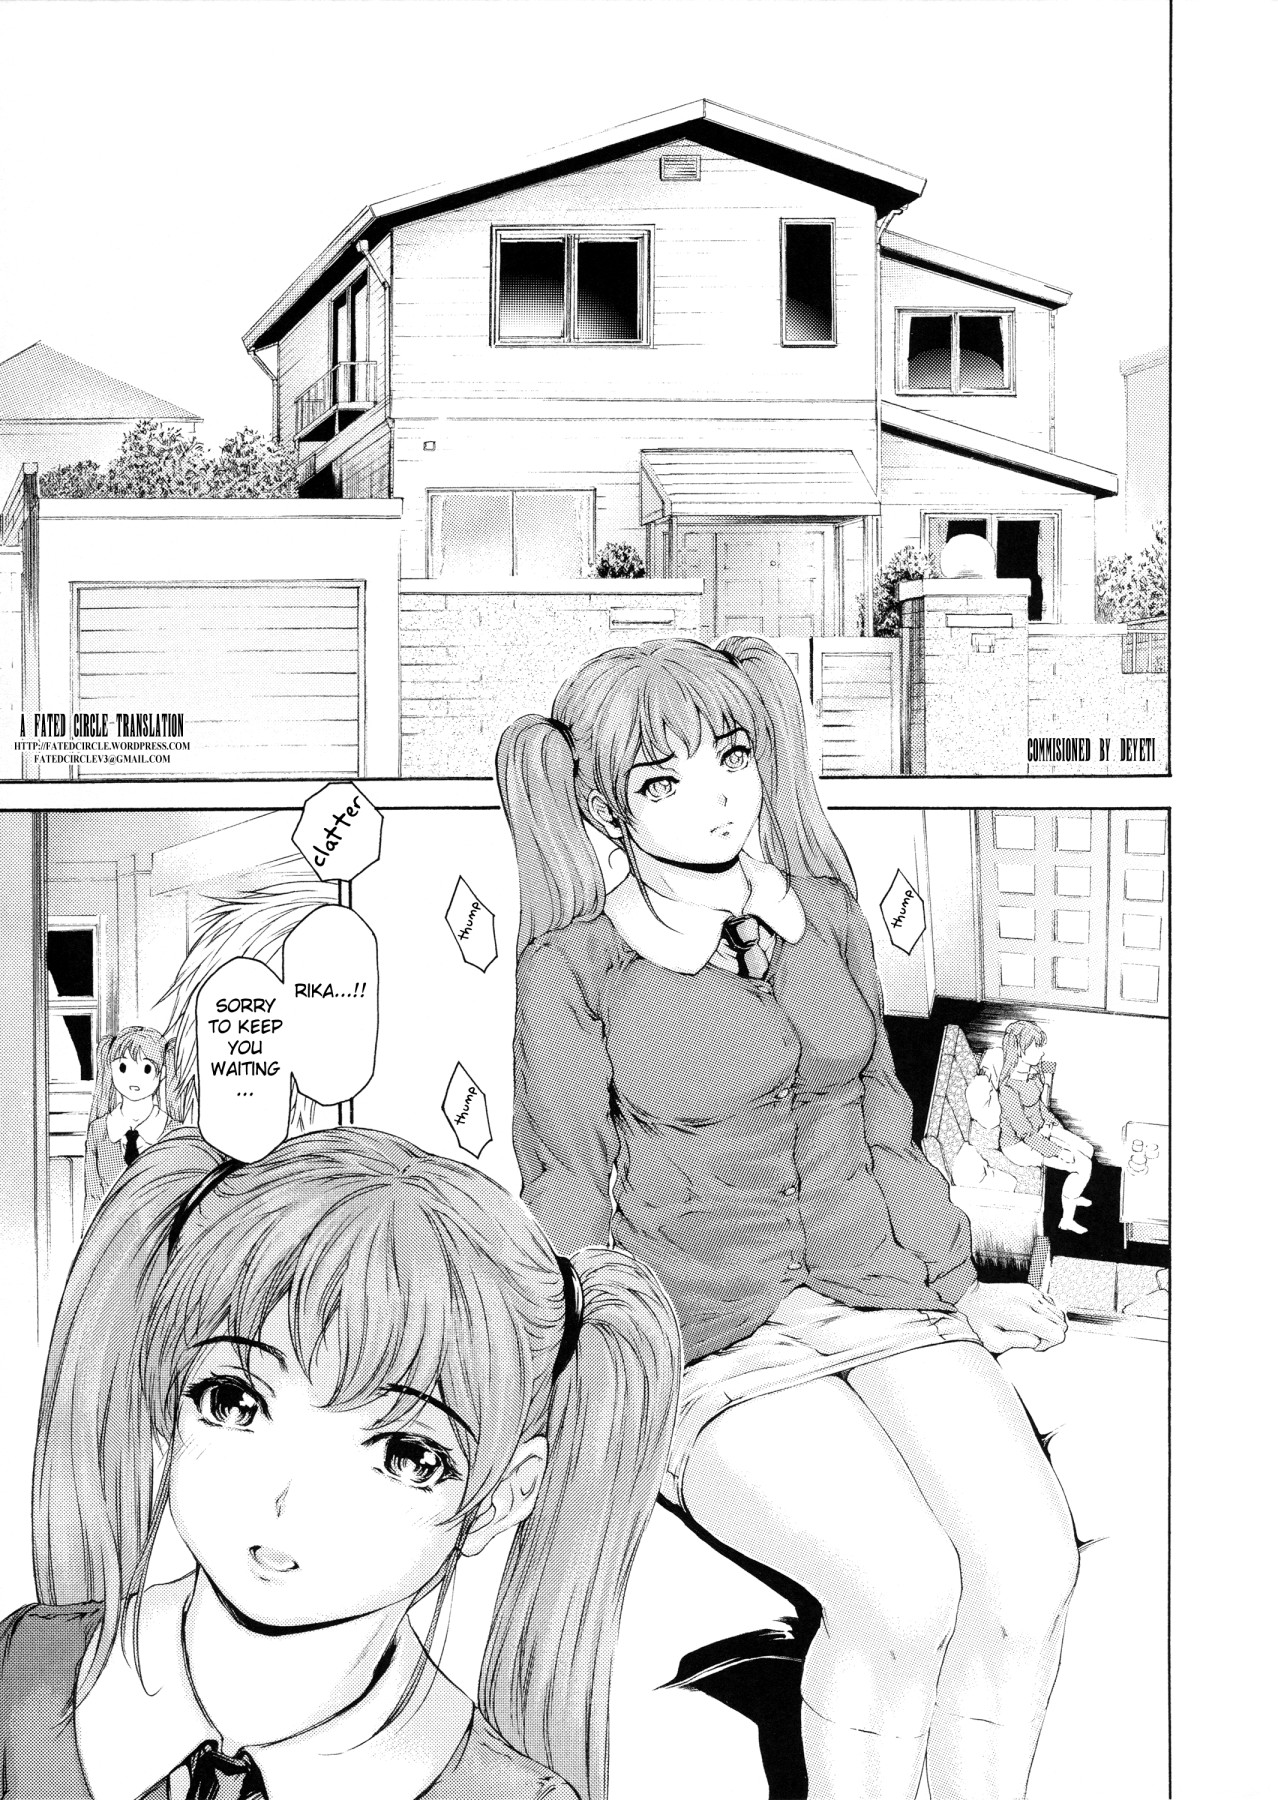 Hentai Manga Comic-9 To 5 Lover  11-Read-2